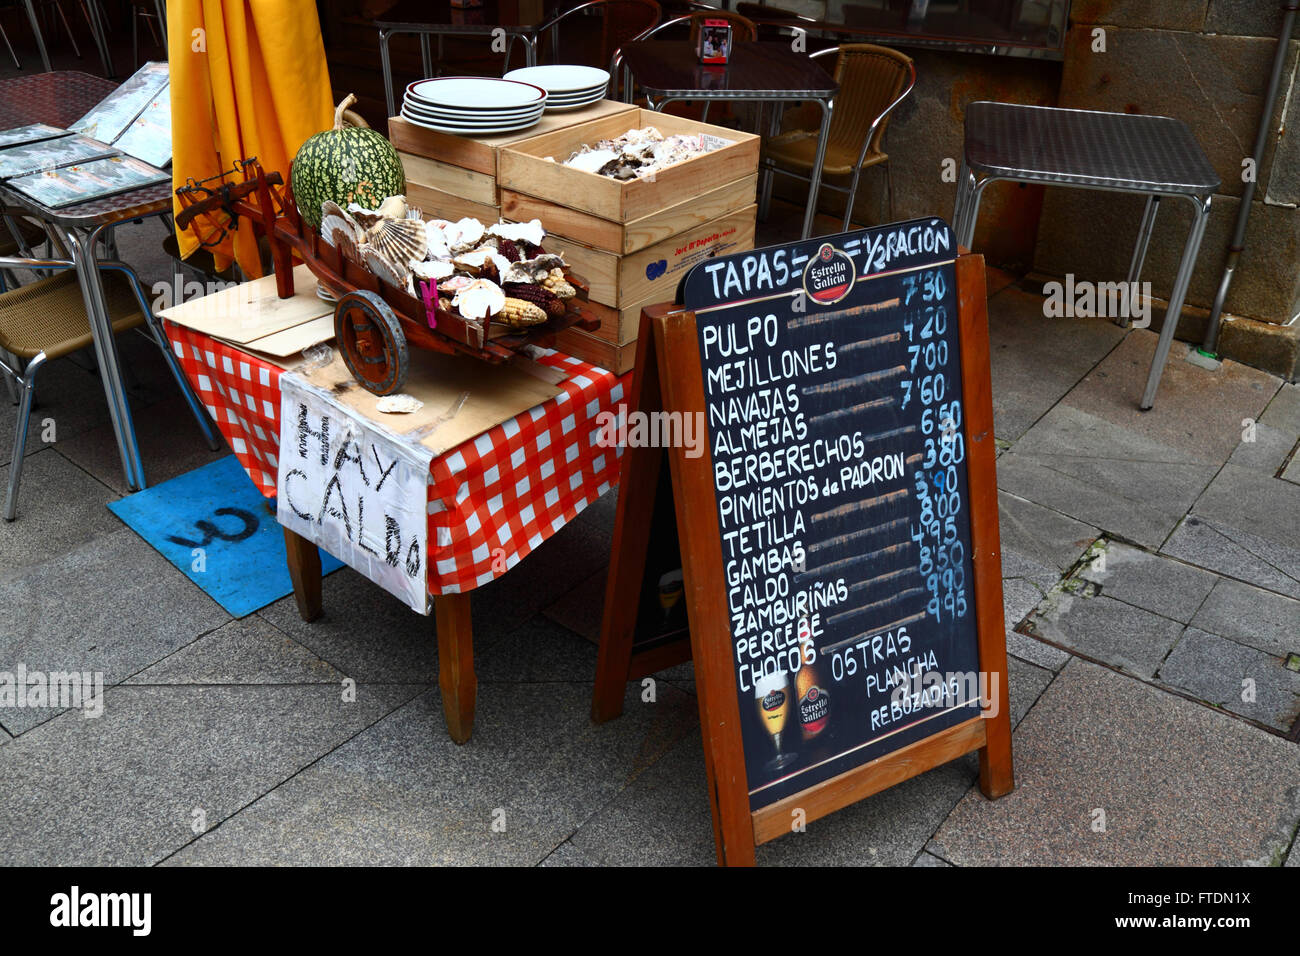 Menu en espagnol avec prix en euros à l'extérieur du restaurant/café de fruits de mer typique, Vigo, Galice, Espagne Banque D'Images